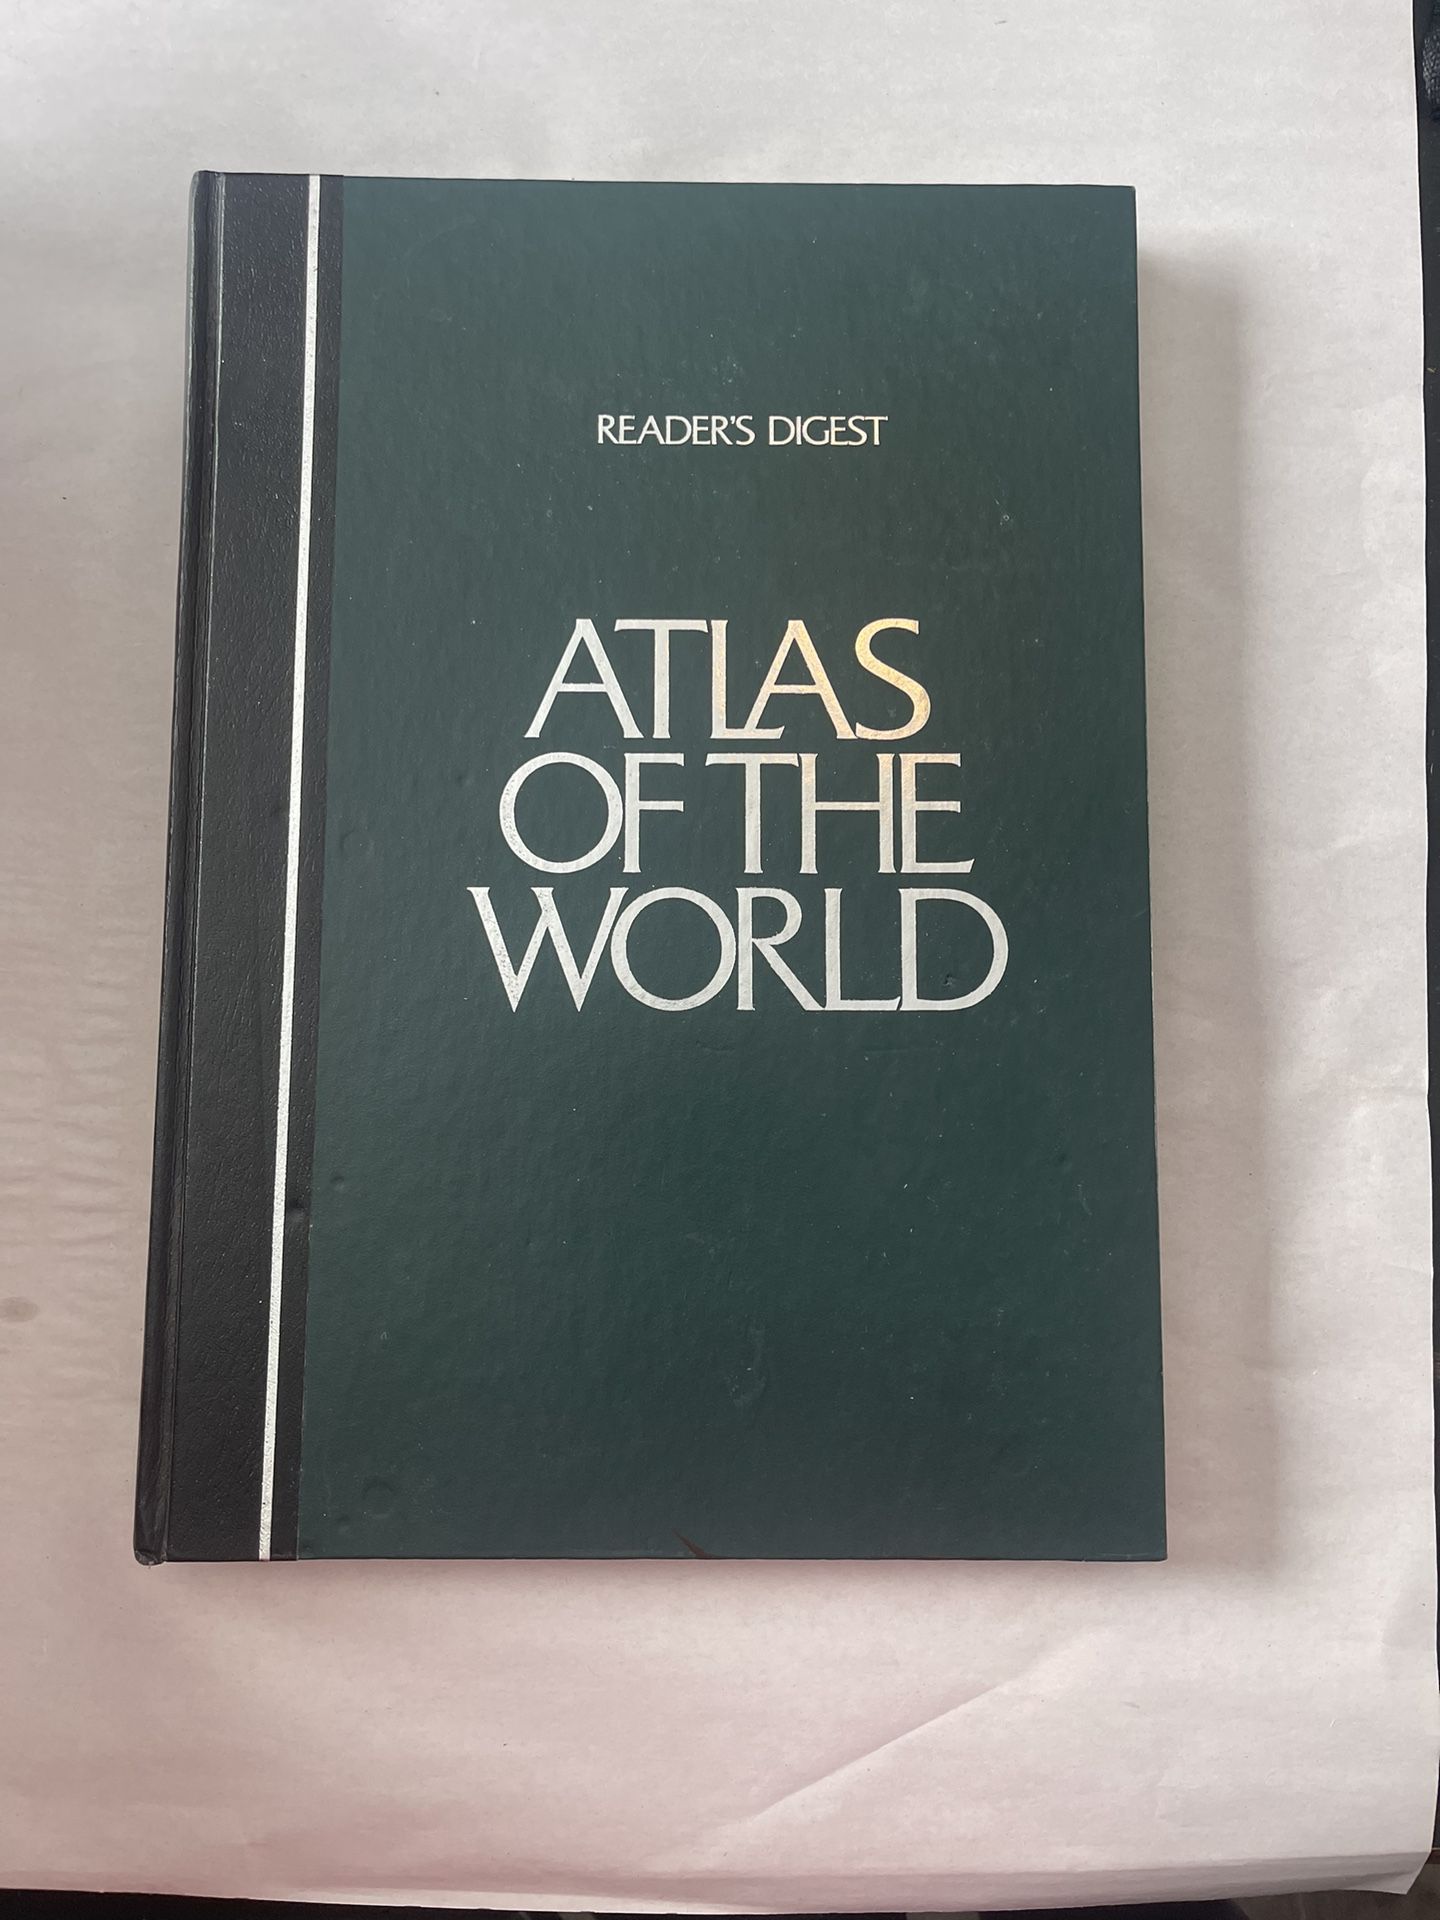 Vintage Reader's Digest Atlas of the World